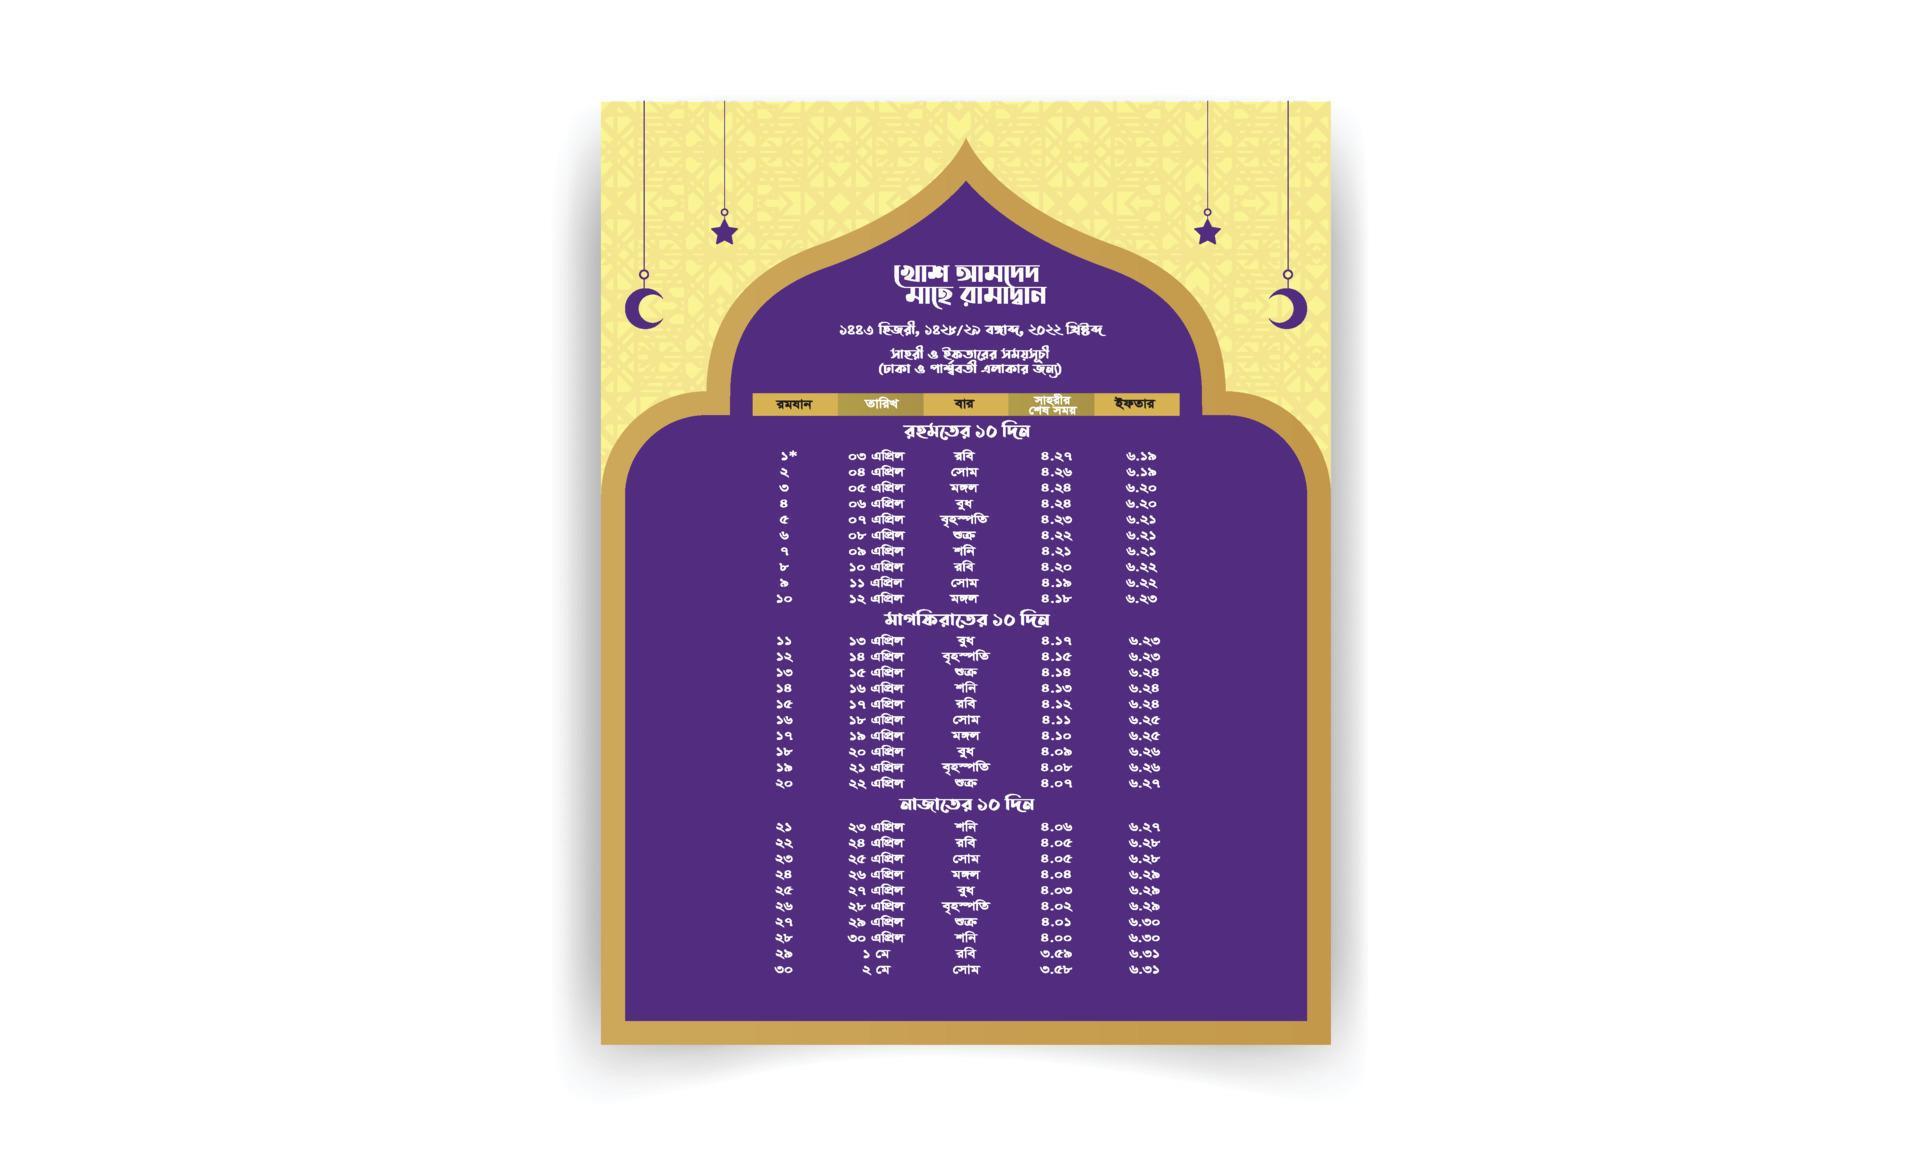 Islamic calendar 2022 ramadan